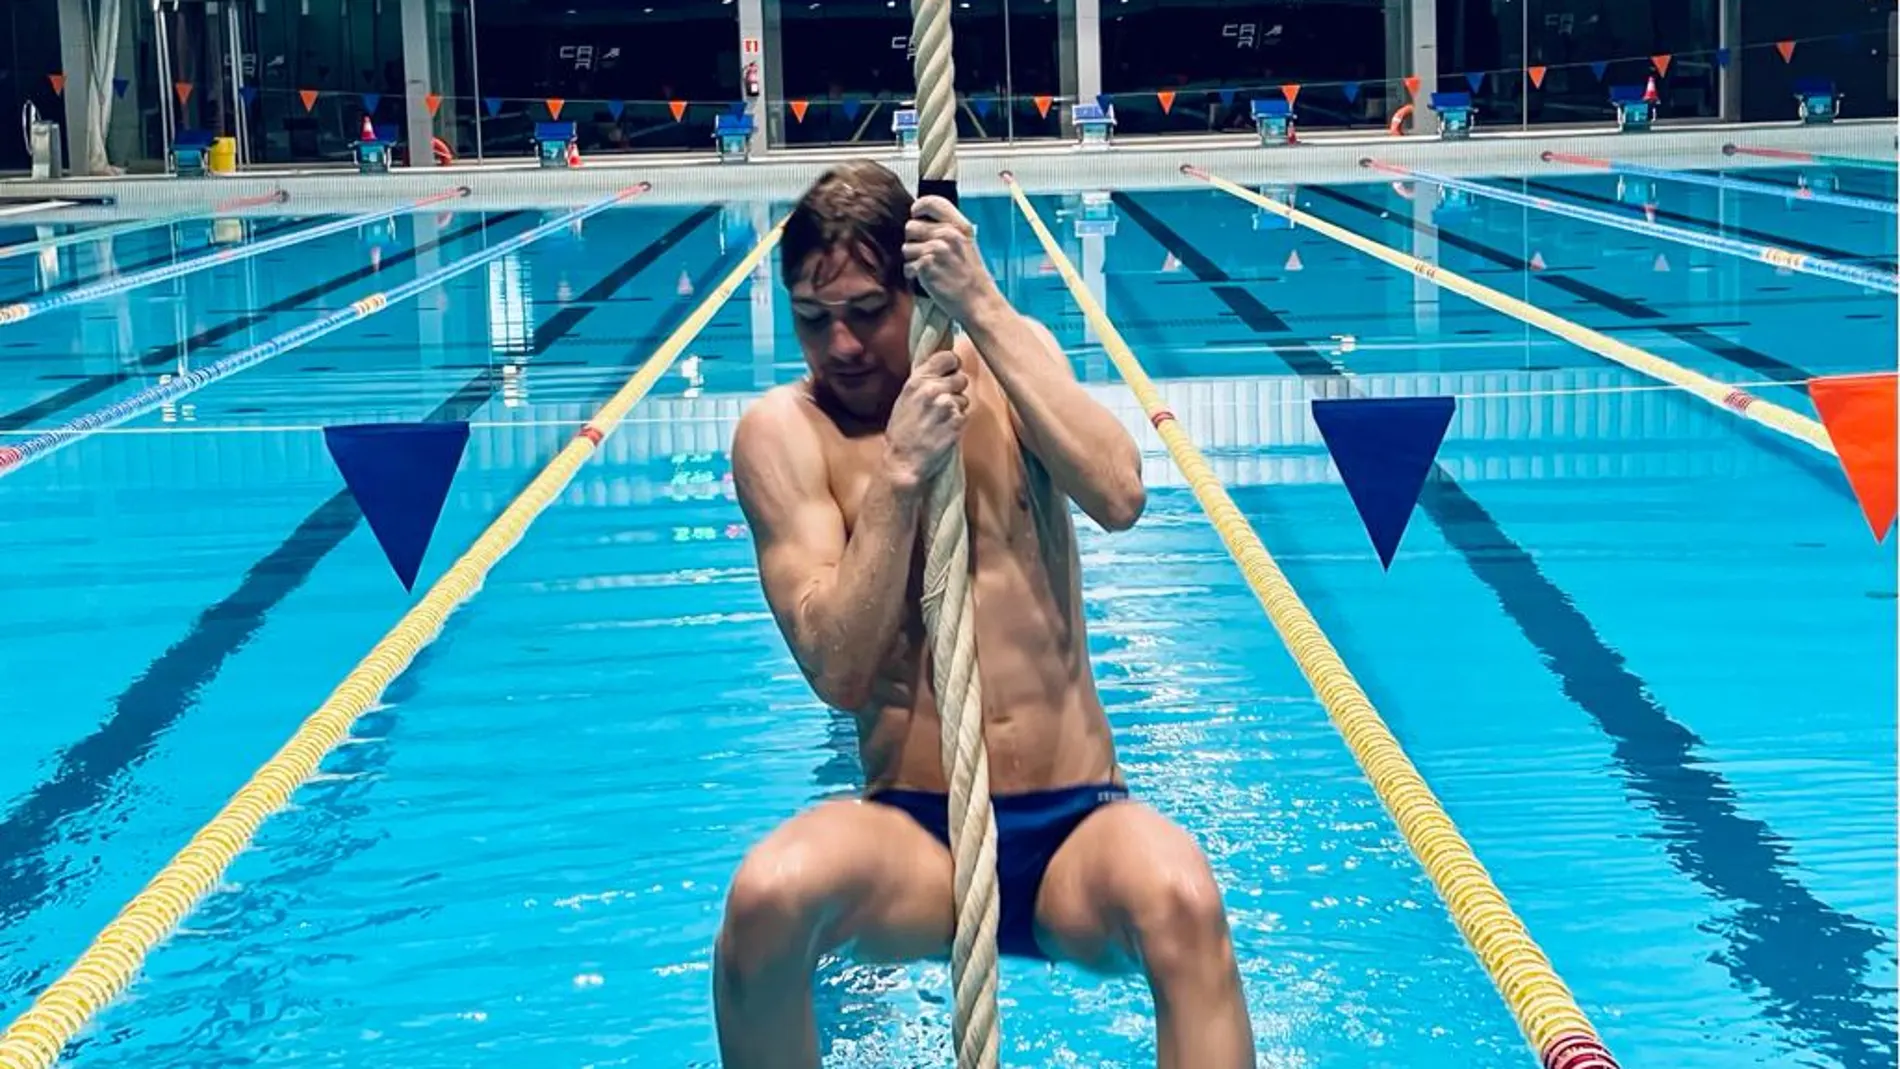 El nadador Alberto Martínez competirá en el Europeo de Budapest en los 10 km de aguas abiertas